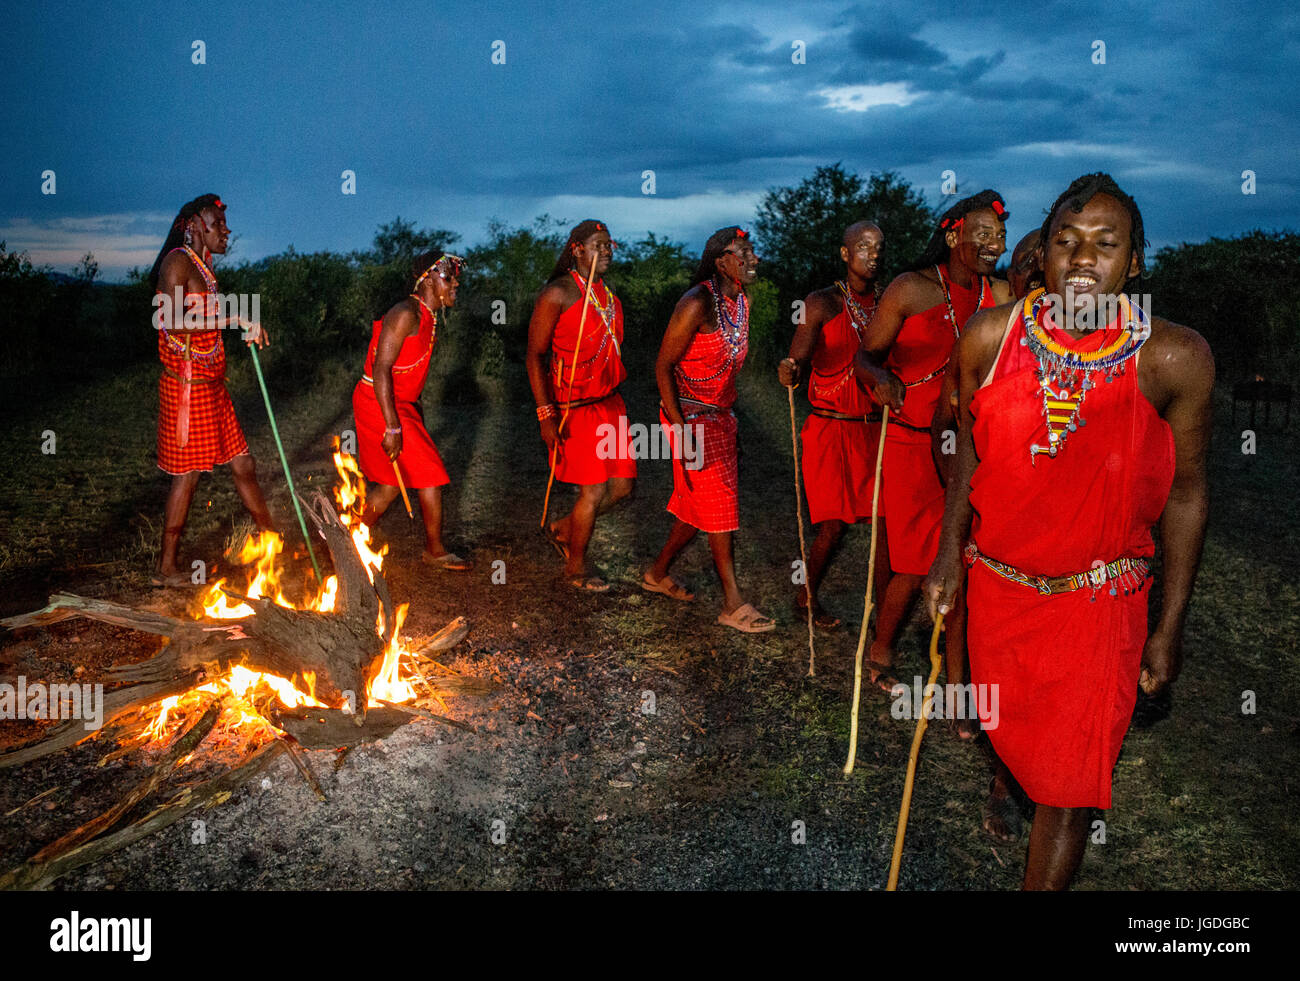 Kenia, MASAI MARA - 22. September 2015: Krieger der Masai Stamm tanzende Ritual tanzen um das Feuer in den späten Abend. Stockfoto